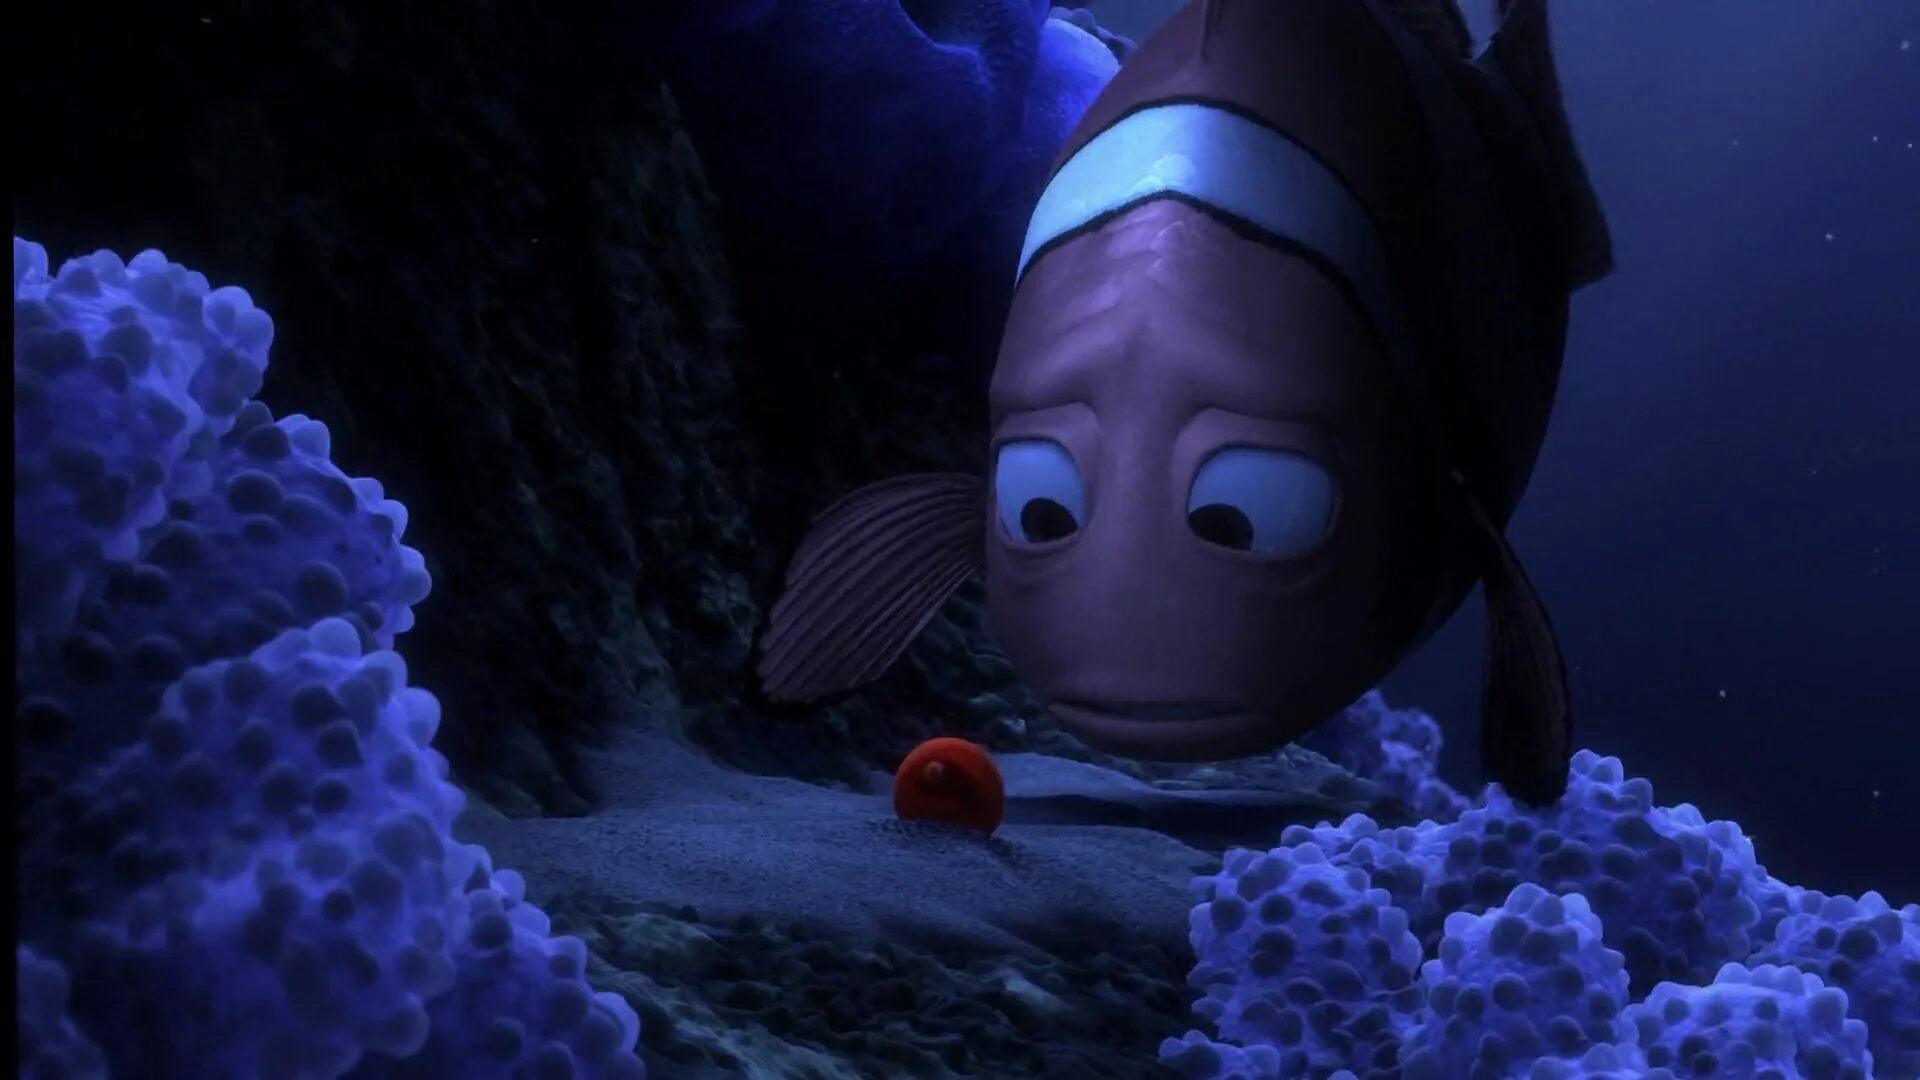 Марлин отец Немо. Finding Nemo 2003. В пои немо